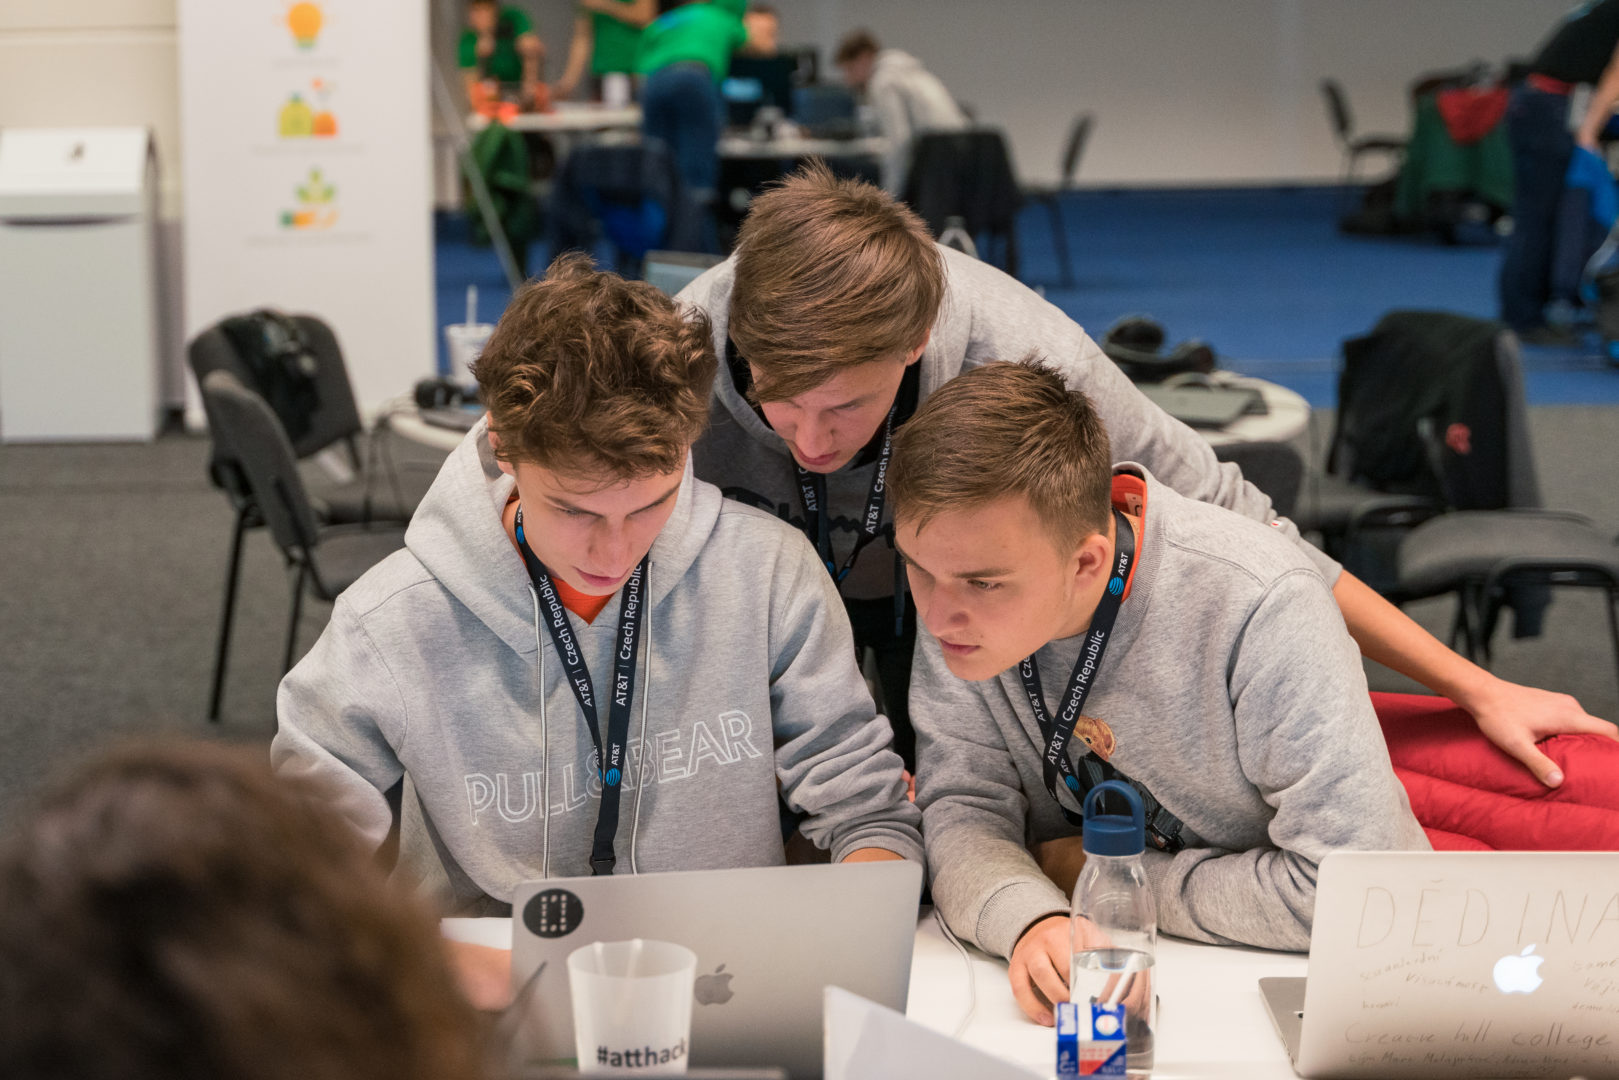 AT&T Hackathon 2019, Brno Czech Republic